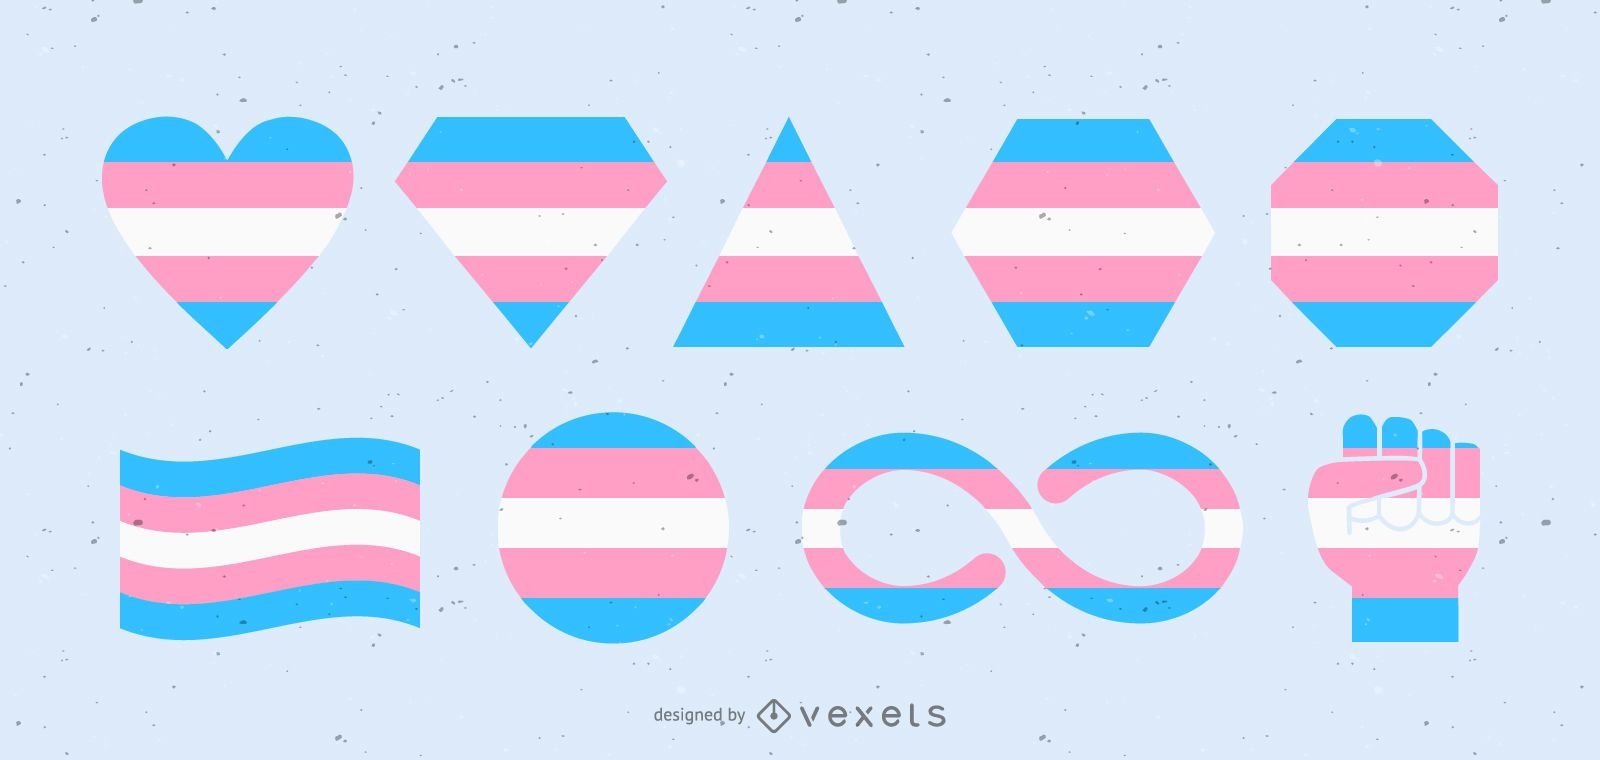 transgender flag shapes design